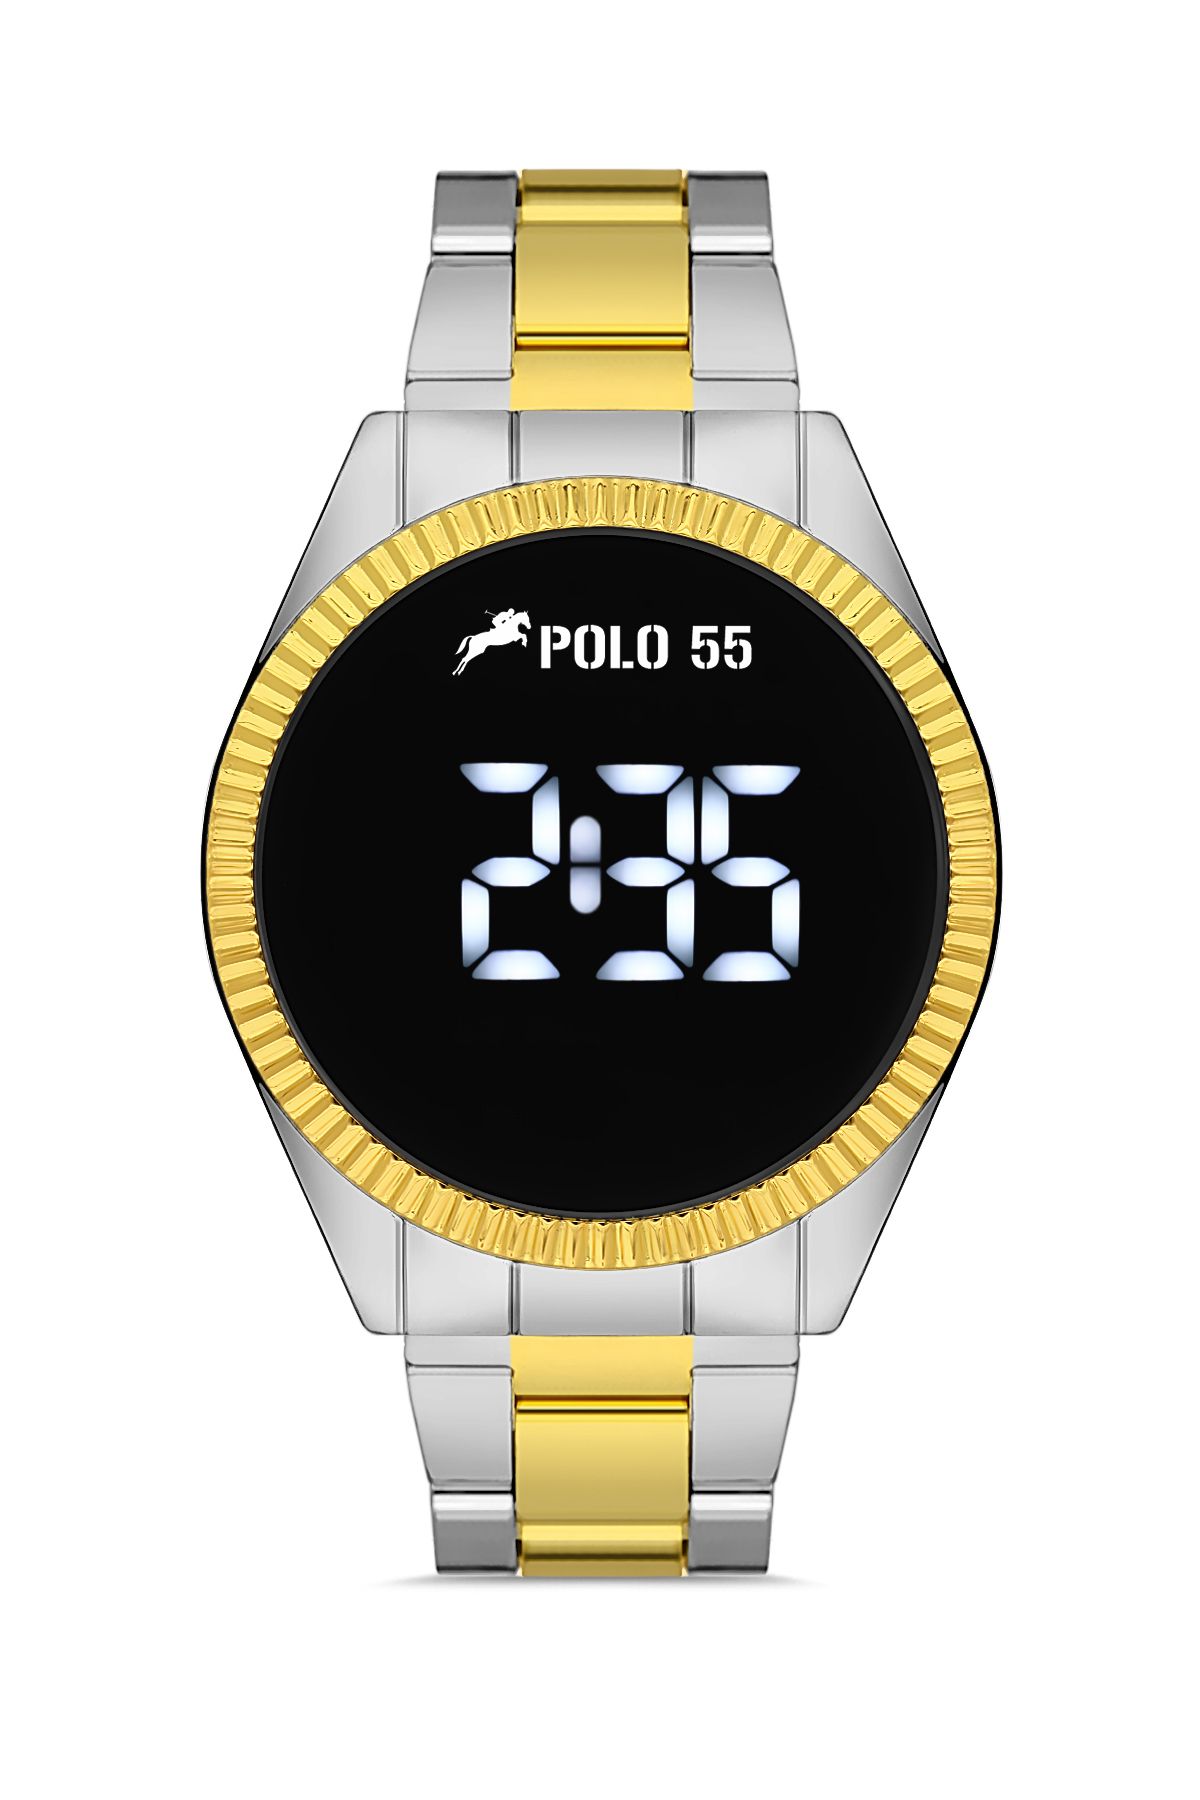 Polo55 Gold-Gümüş Dokunmatik Dijital Metal Kordon Kadın Kol Saati